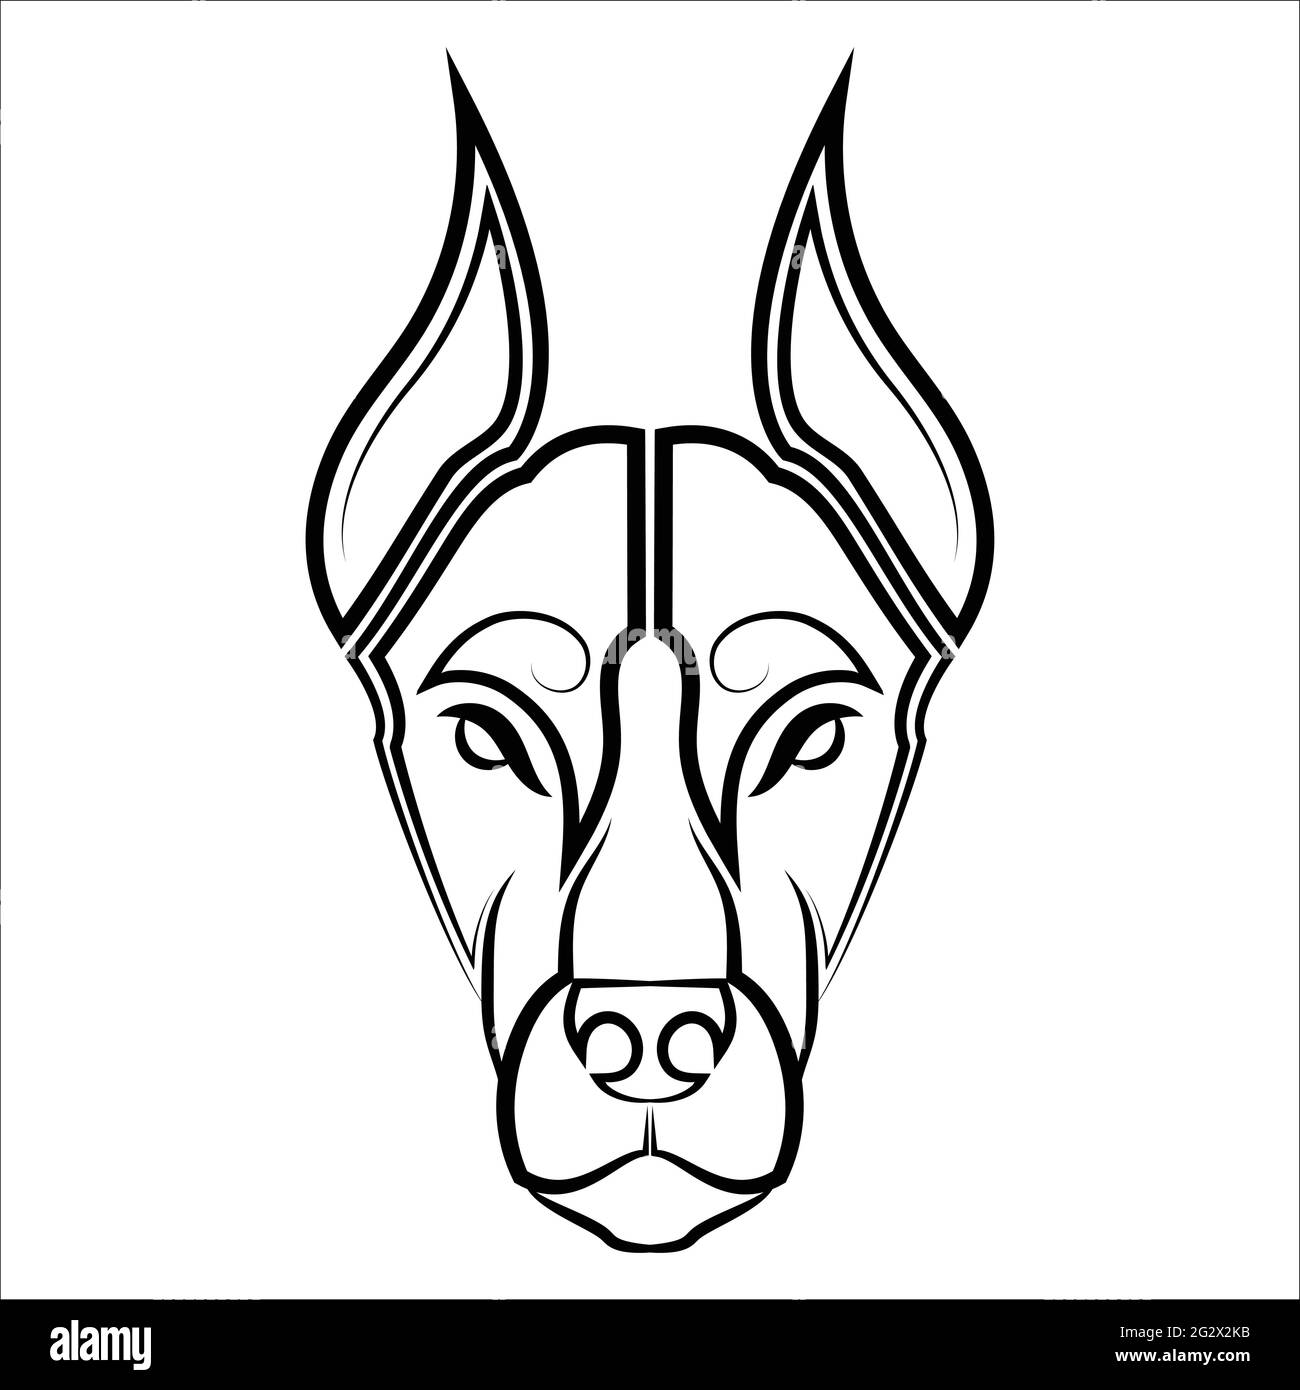 Art noir et blanc de la tête de chien Doberman Pinscher bonne utilisation pour symbole, icône de mascotte avatar tatouage T logo de la chemise ou n'importe quel design vous voulez Illustration de Vecteur